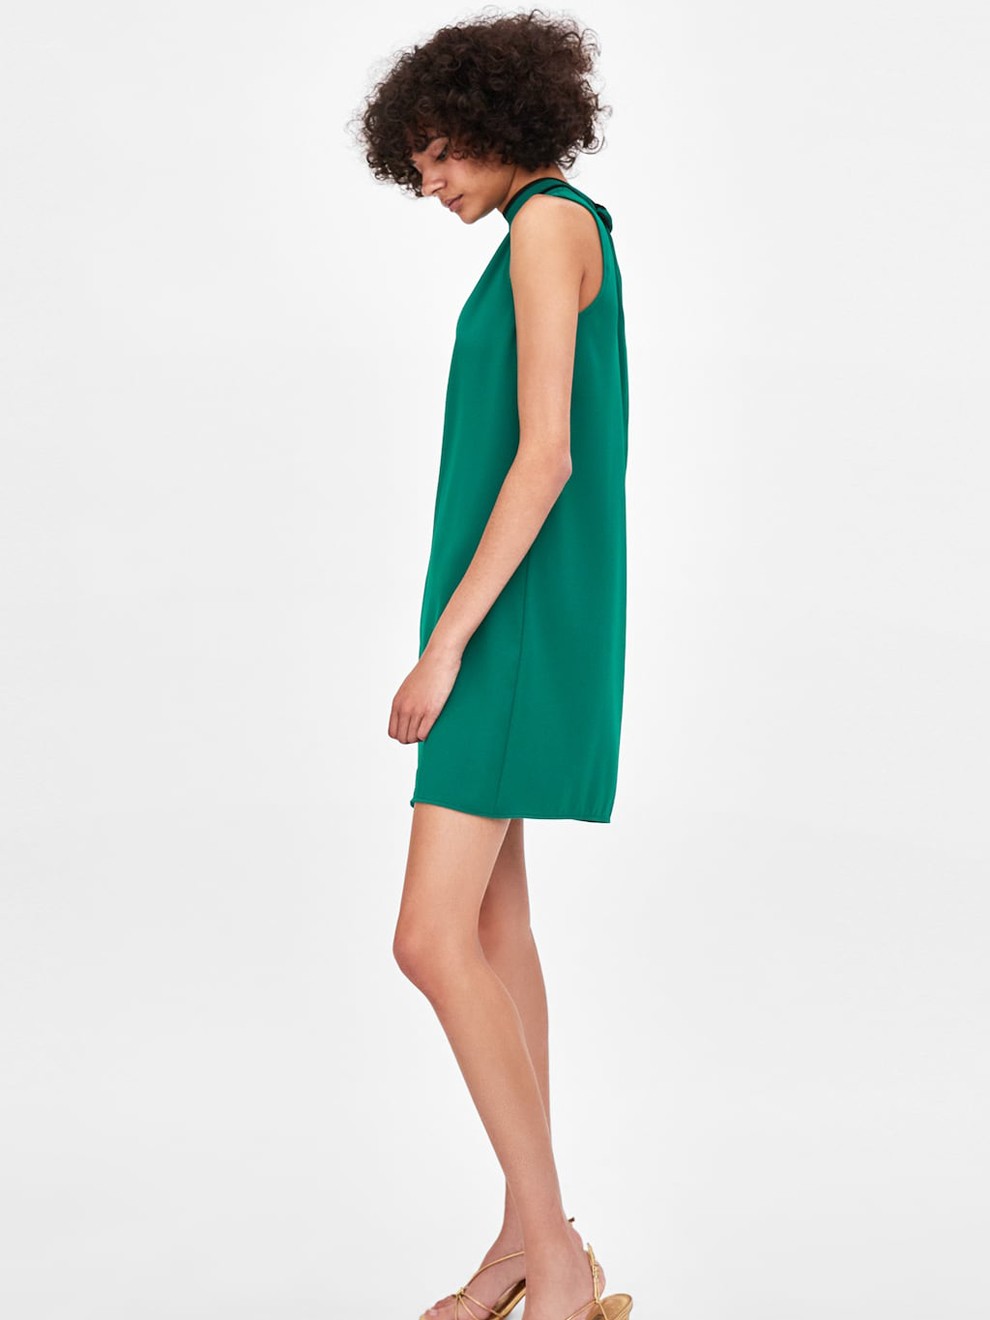 Divertido vestido en color verde de Zara